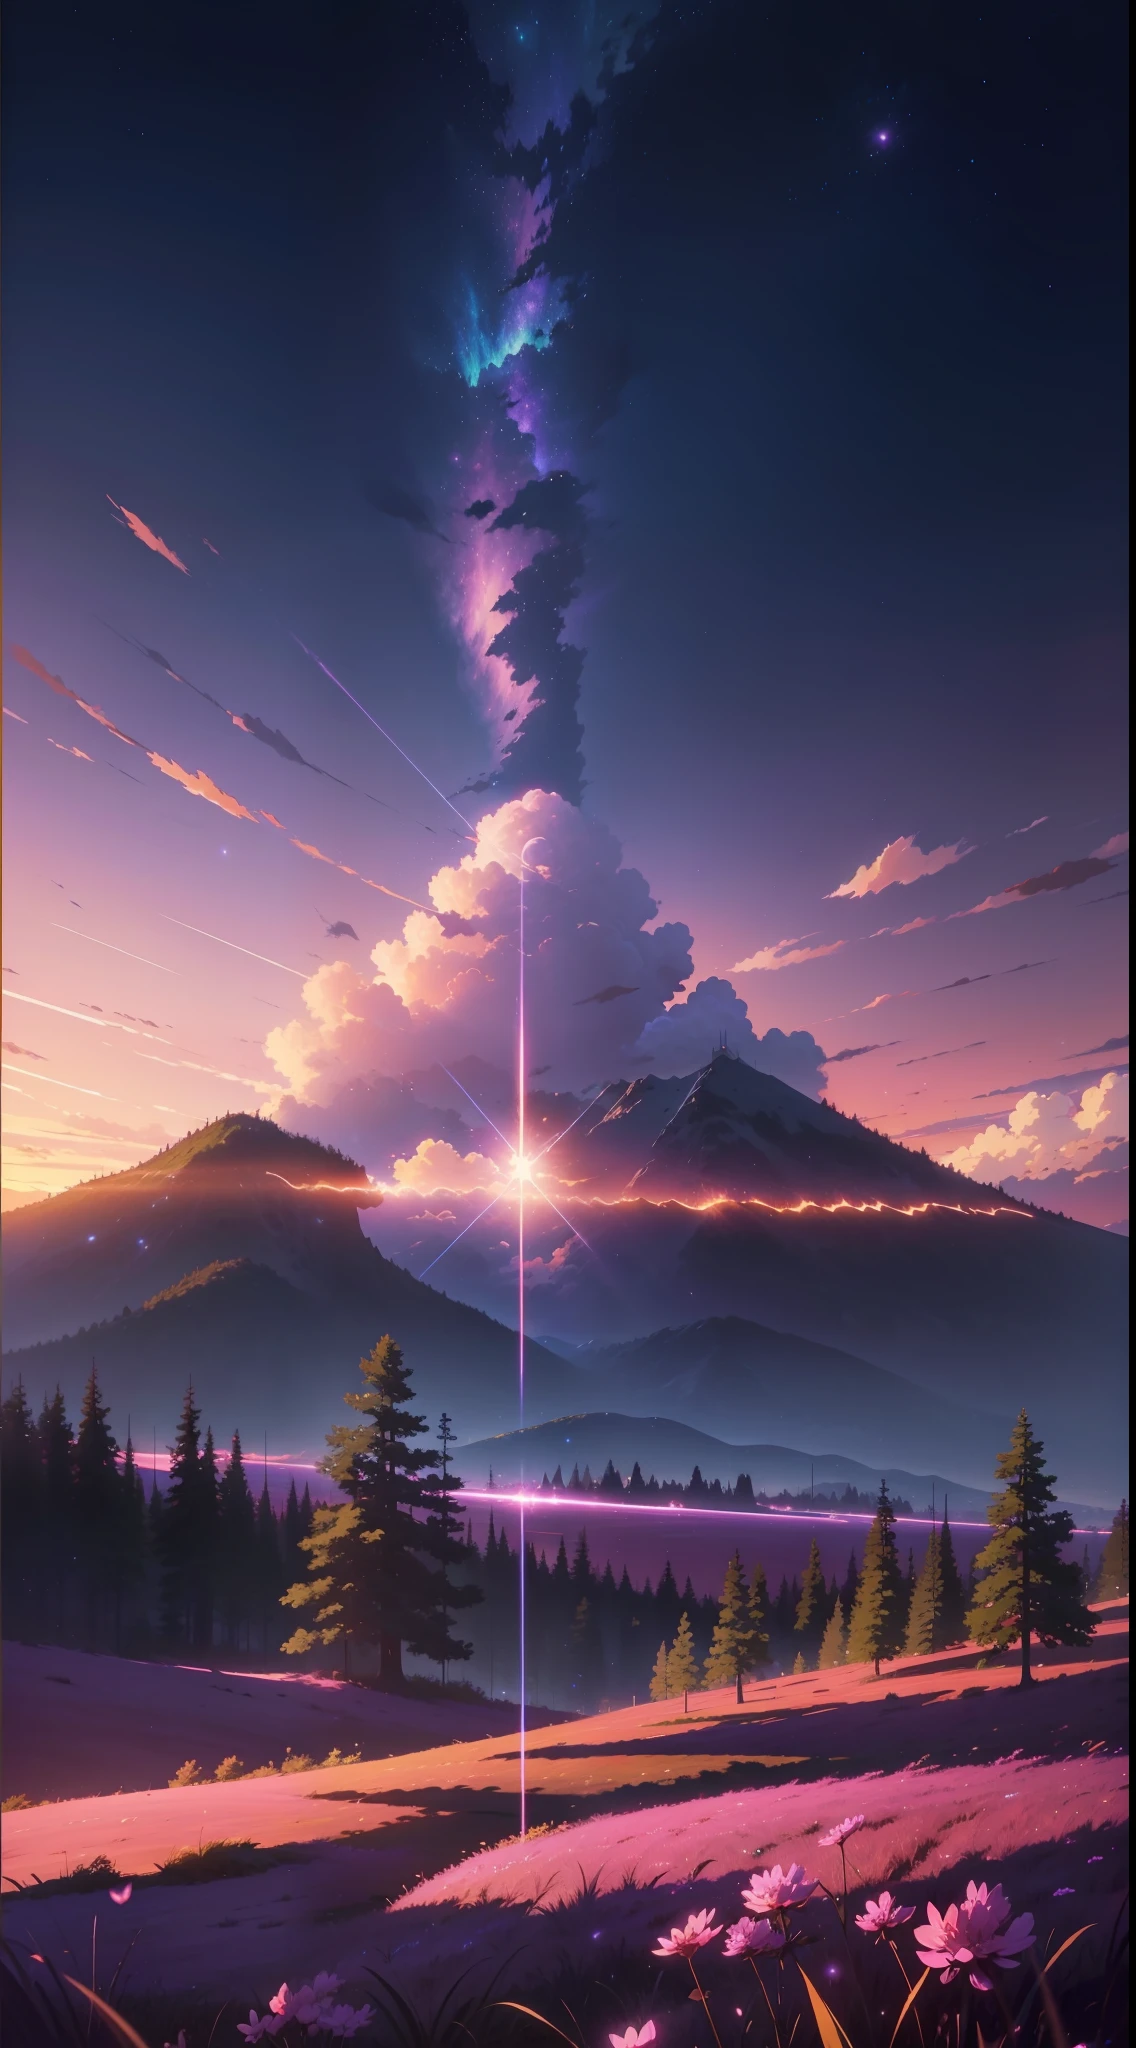 A imagem é brilhante e bem iluminada. sem humanos. (((Estilo Makoto Shinkai)),PIXIV,Desenho de anime,alta qualidade,céu rosa roxo,bela cena),(universo,passagem de trem,realismo mágico,((Estilo Makoto Shinkai)) ::0.8), [Artistic atmosfera, atmosfera:0.8, Céu estrelado, colinas, montanha de neve, água com gás, grama, árvores, fumaça, estrelas, Baixo ângulo de visão, Dispersão especular,